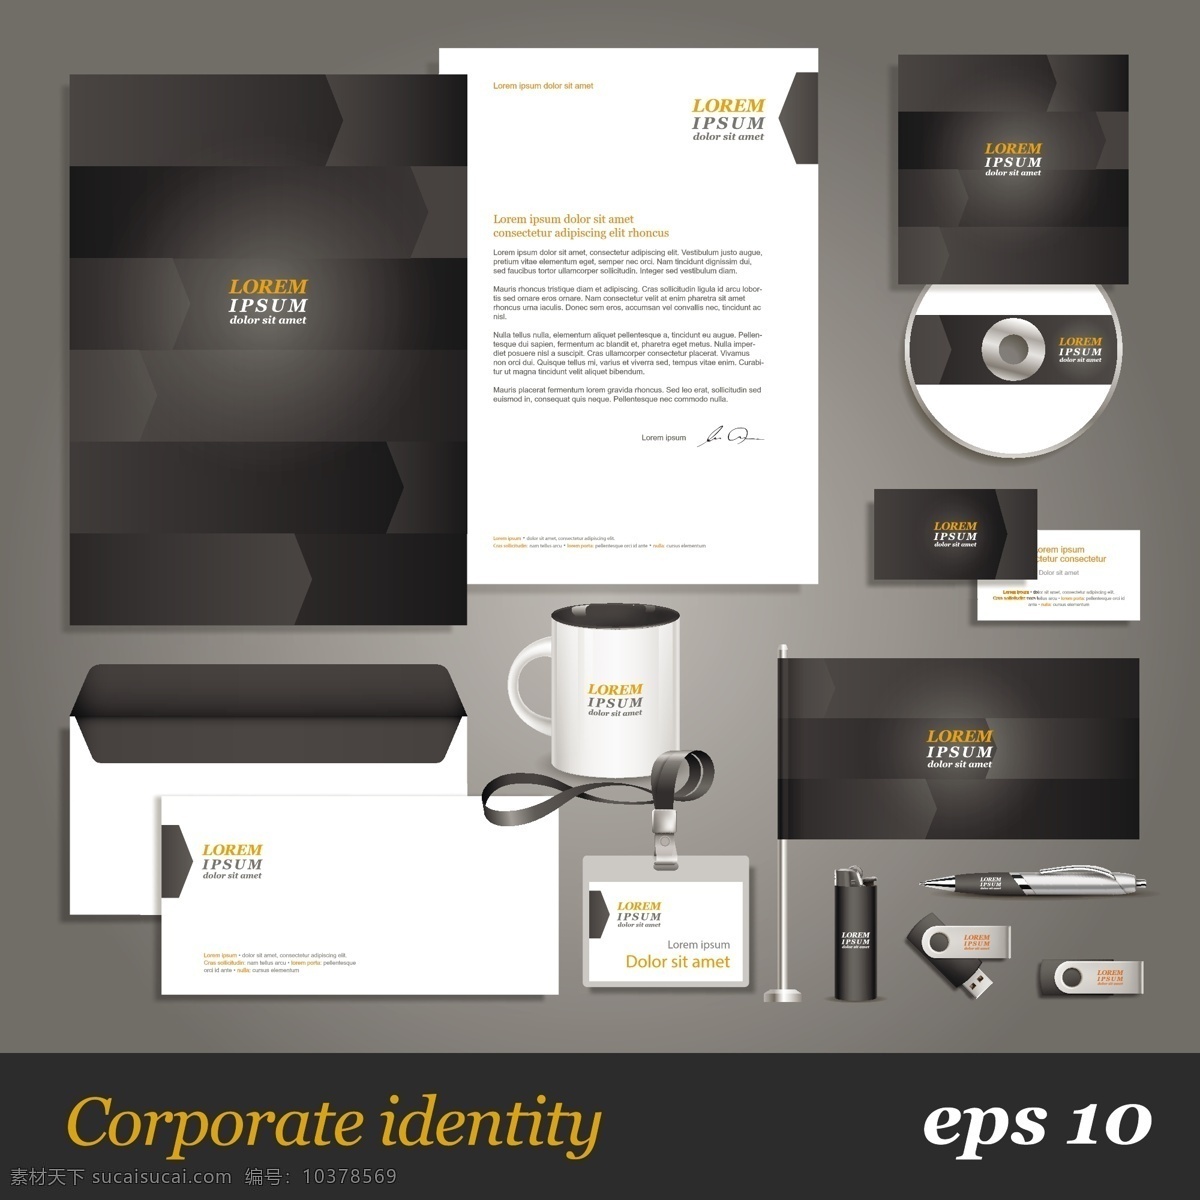 企业 vi 设计素材 光盘盒 会员牌 台牌 a4 包装 展示 科技 公司vi 广告设计模板